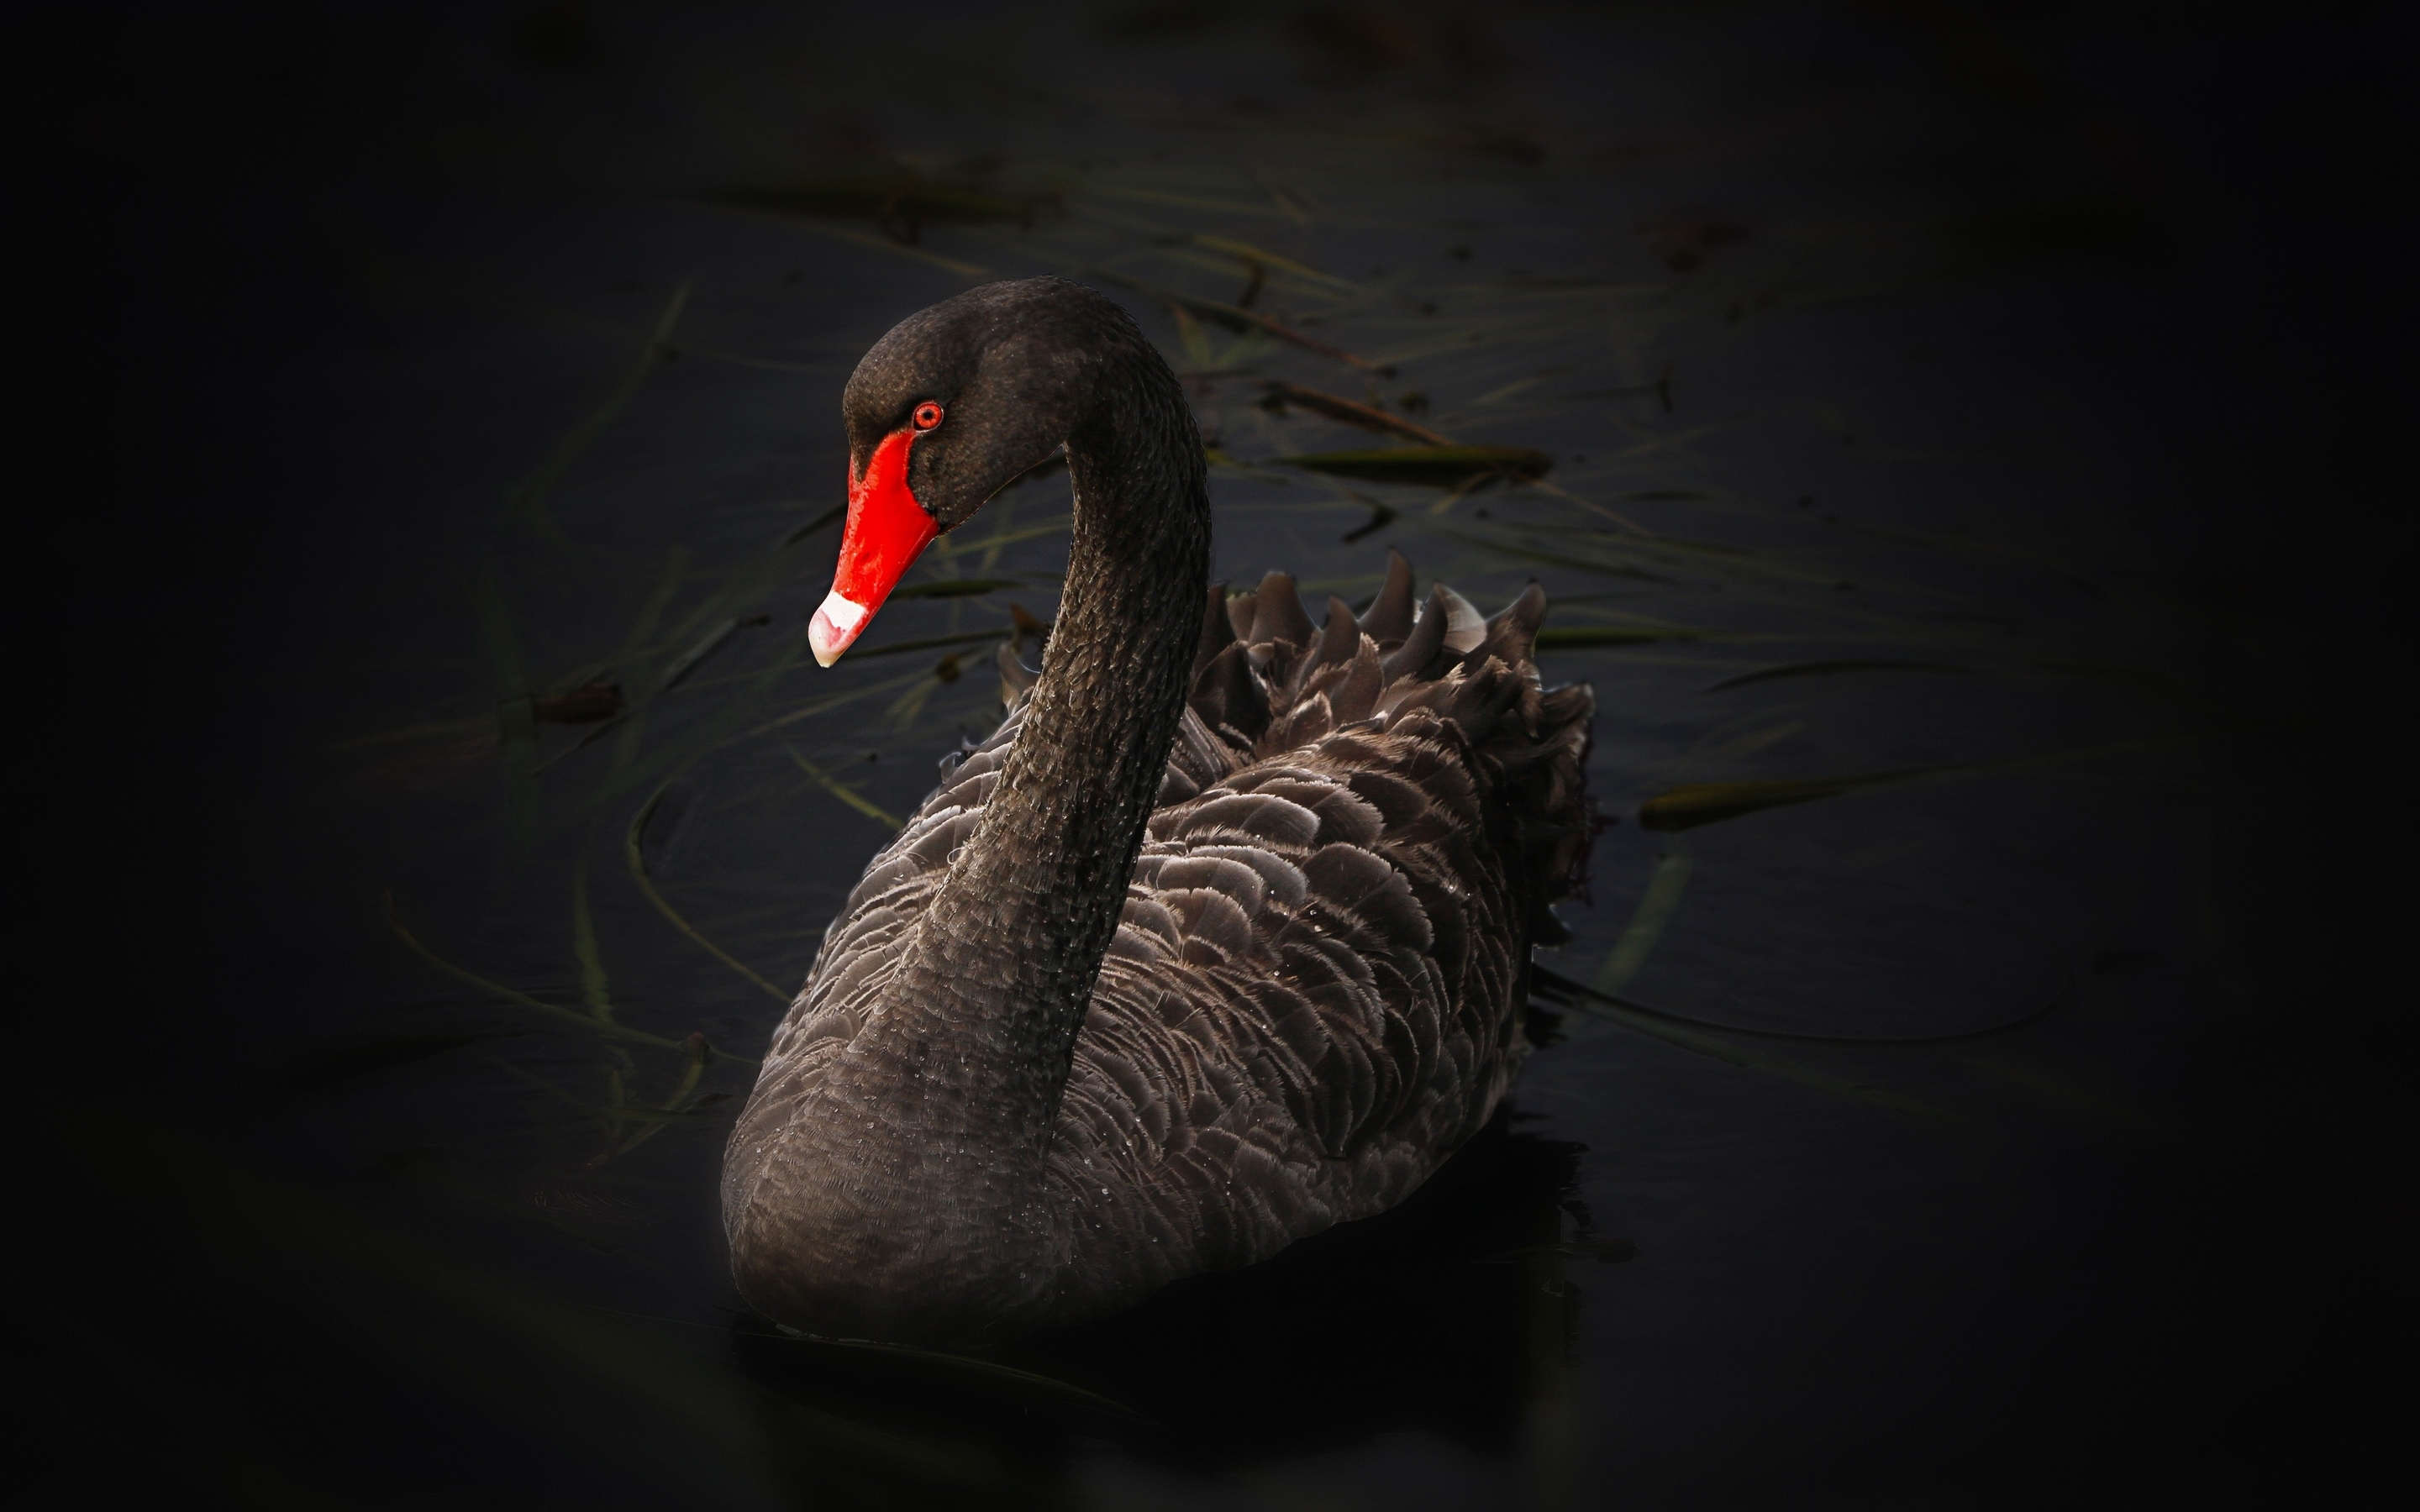 Image: Bird, black swan, water, grass, red, beak, blackout